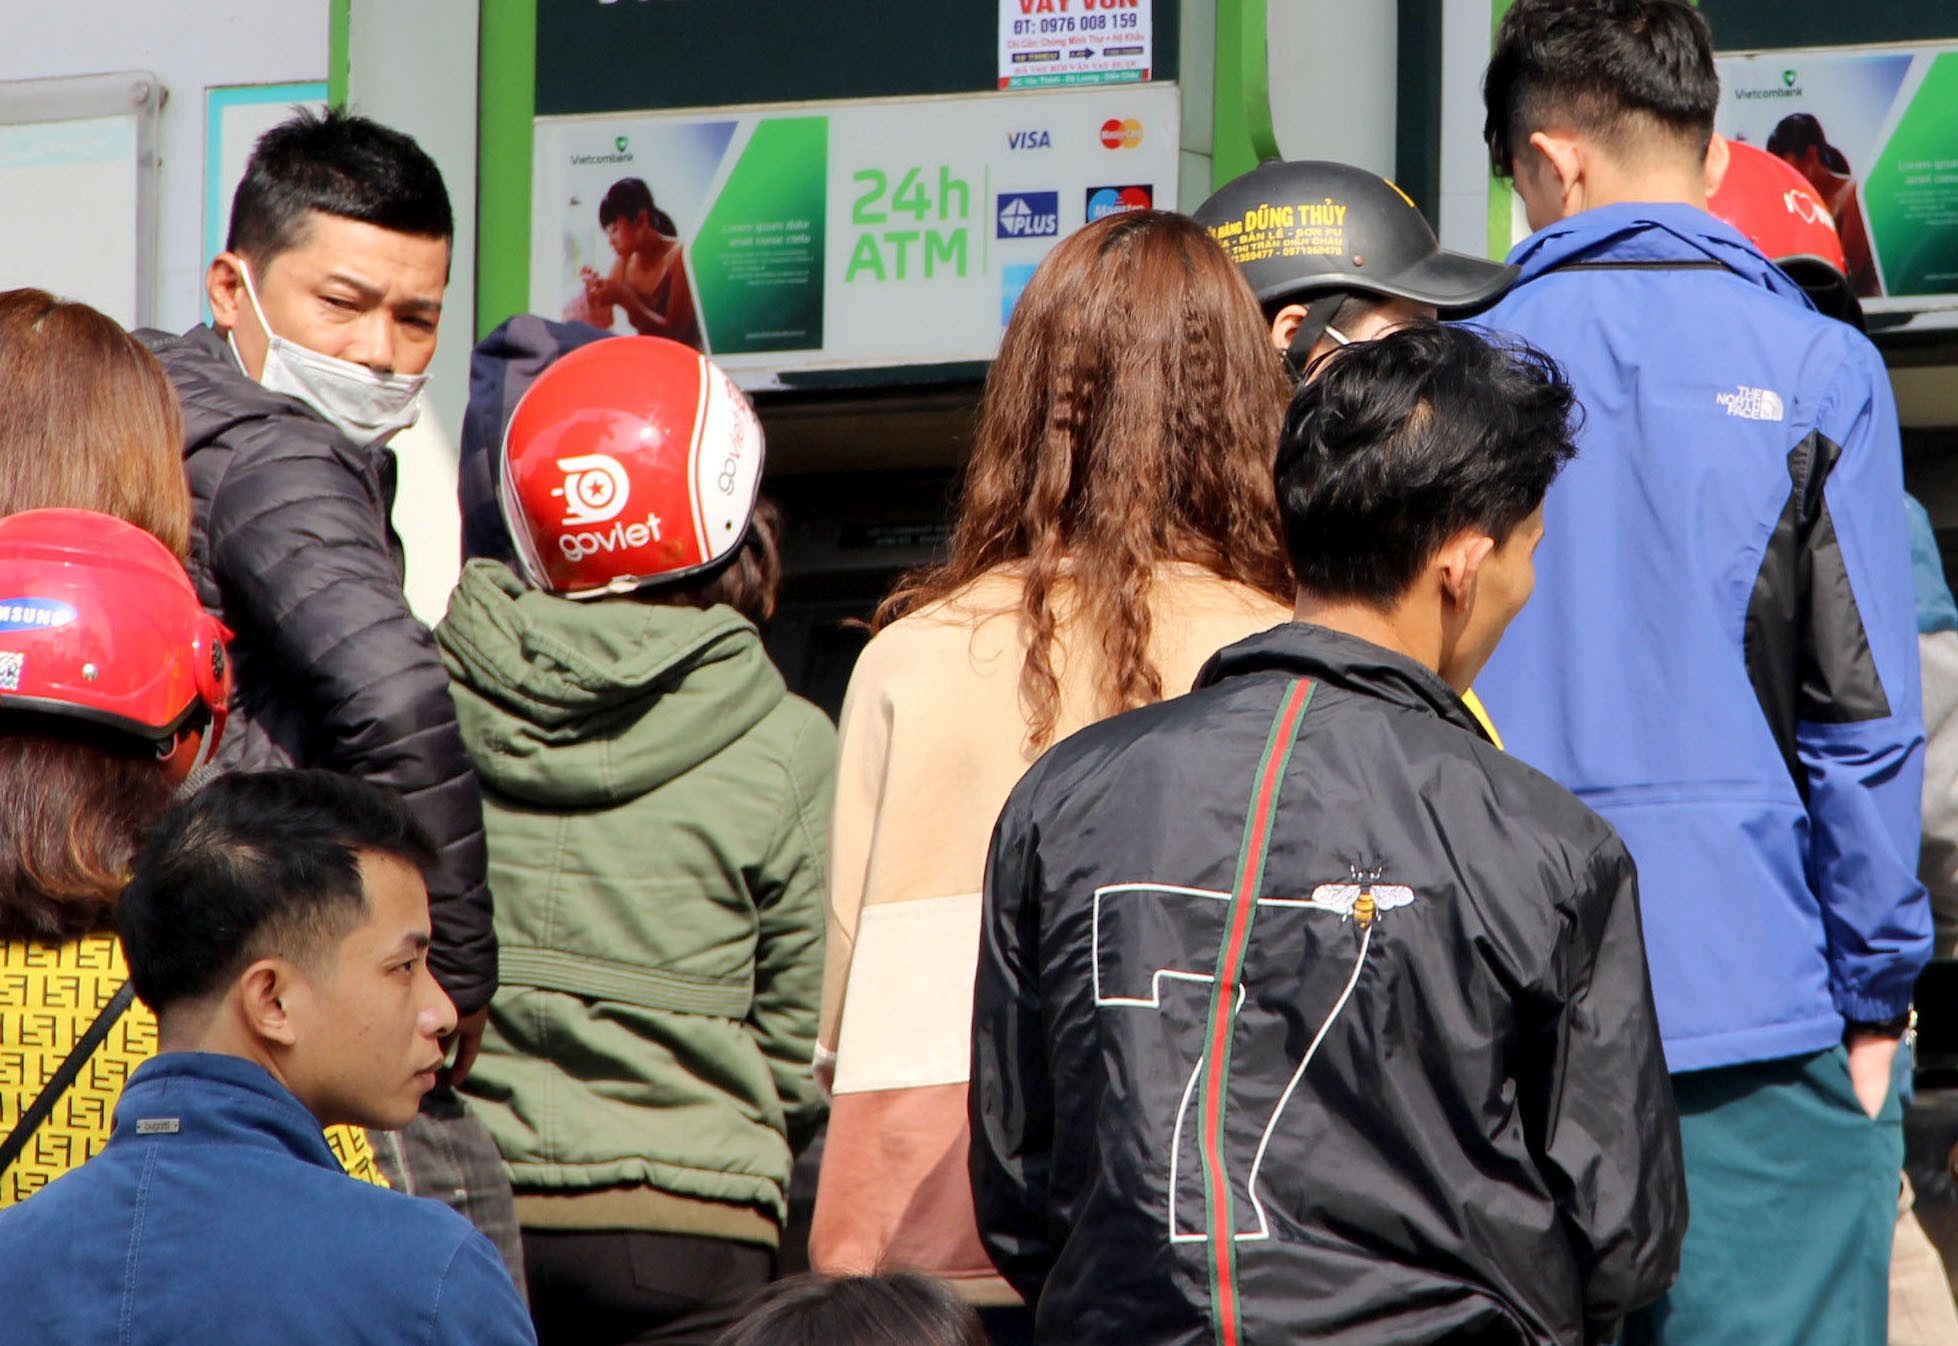 Tại thị trấn Diễn Châu, các cây ATM cũng trong tình trạng quá tải chiều 31/1. Ảnh: Nguyên Châu